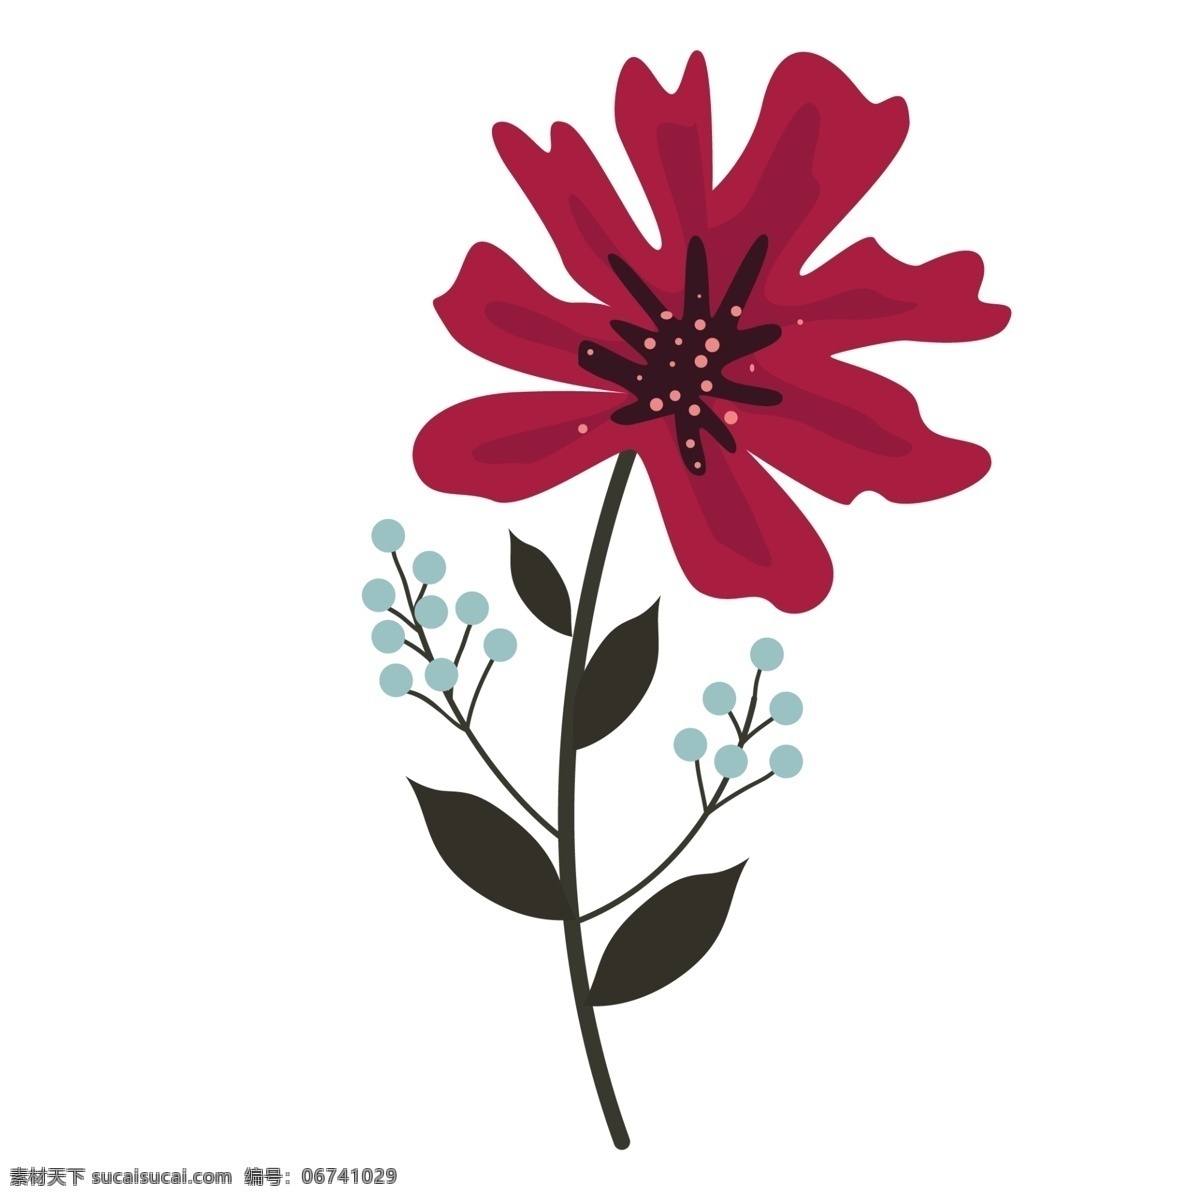 好看 株 深 红色 花朵 卡通花朵红色 植物 彩色 卡通花朵 手绘花朵 绿色枝叶 一株植物 手绘卡通免抠